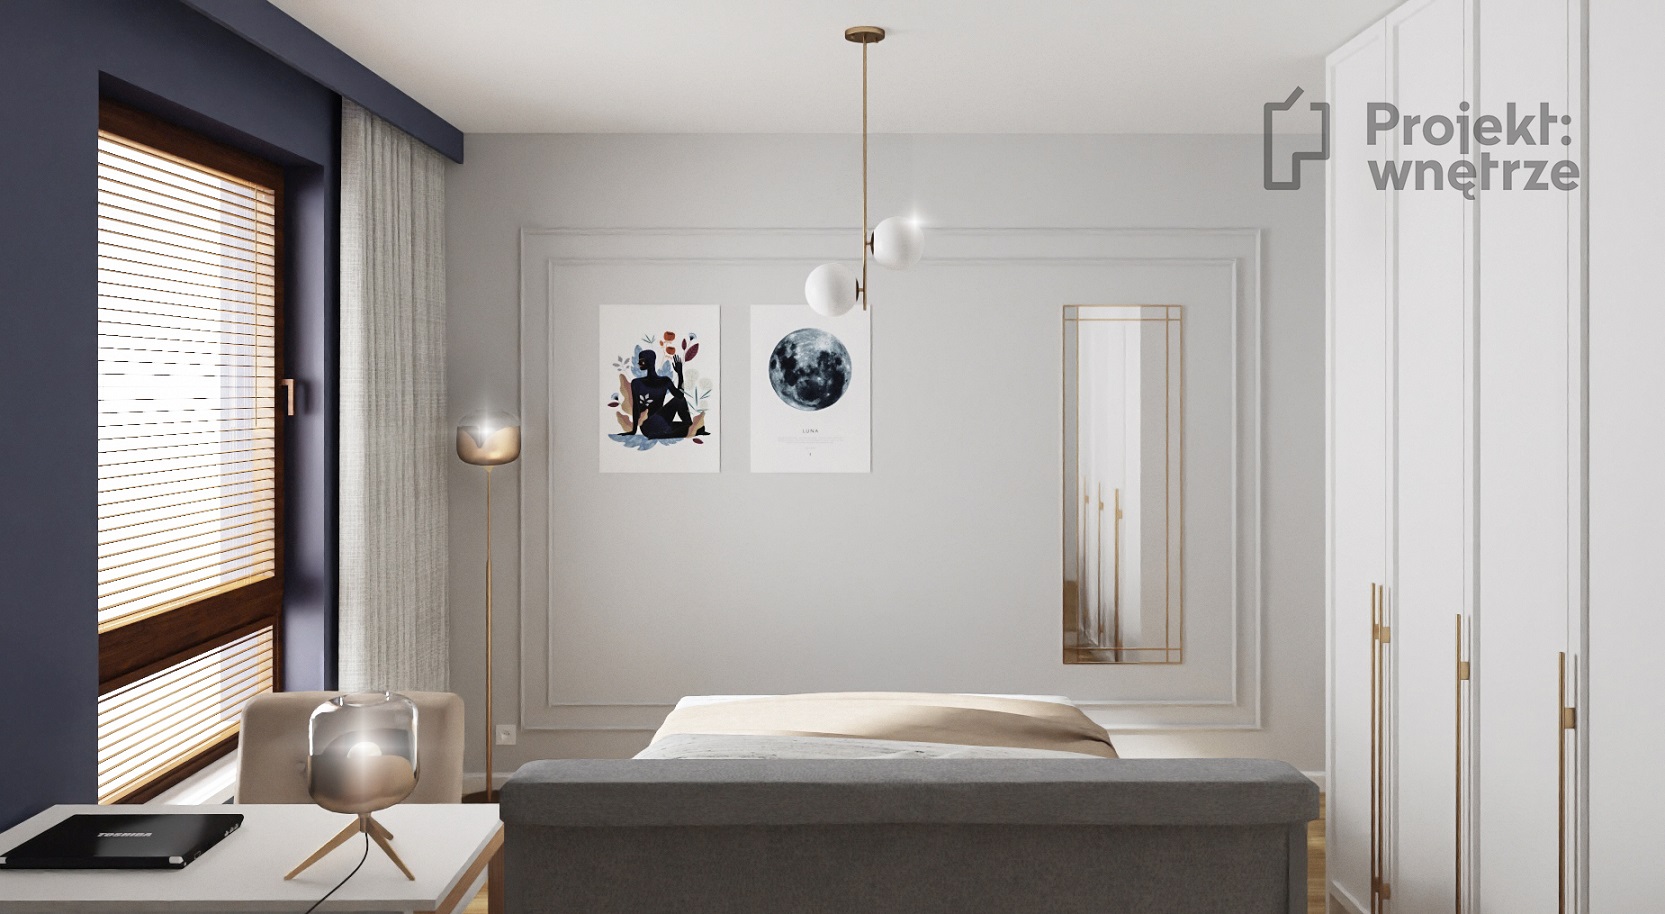 Elegancka sypialnia granat złoto sztukateria szarość Projekt: Wnętrze